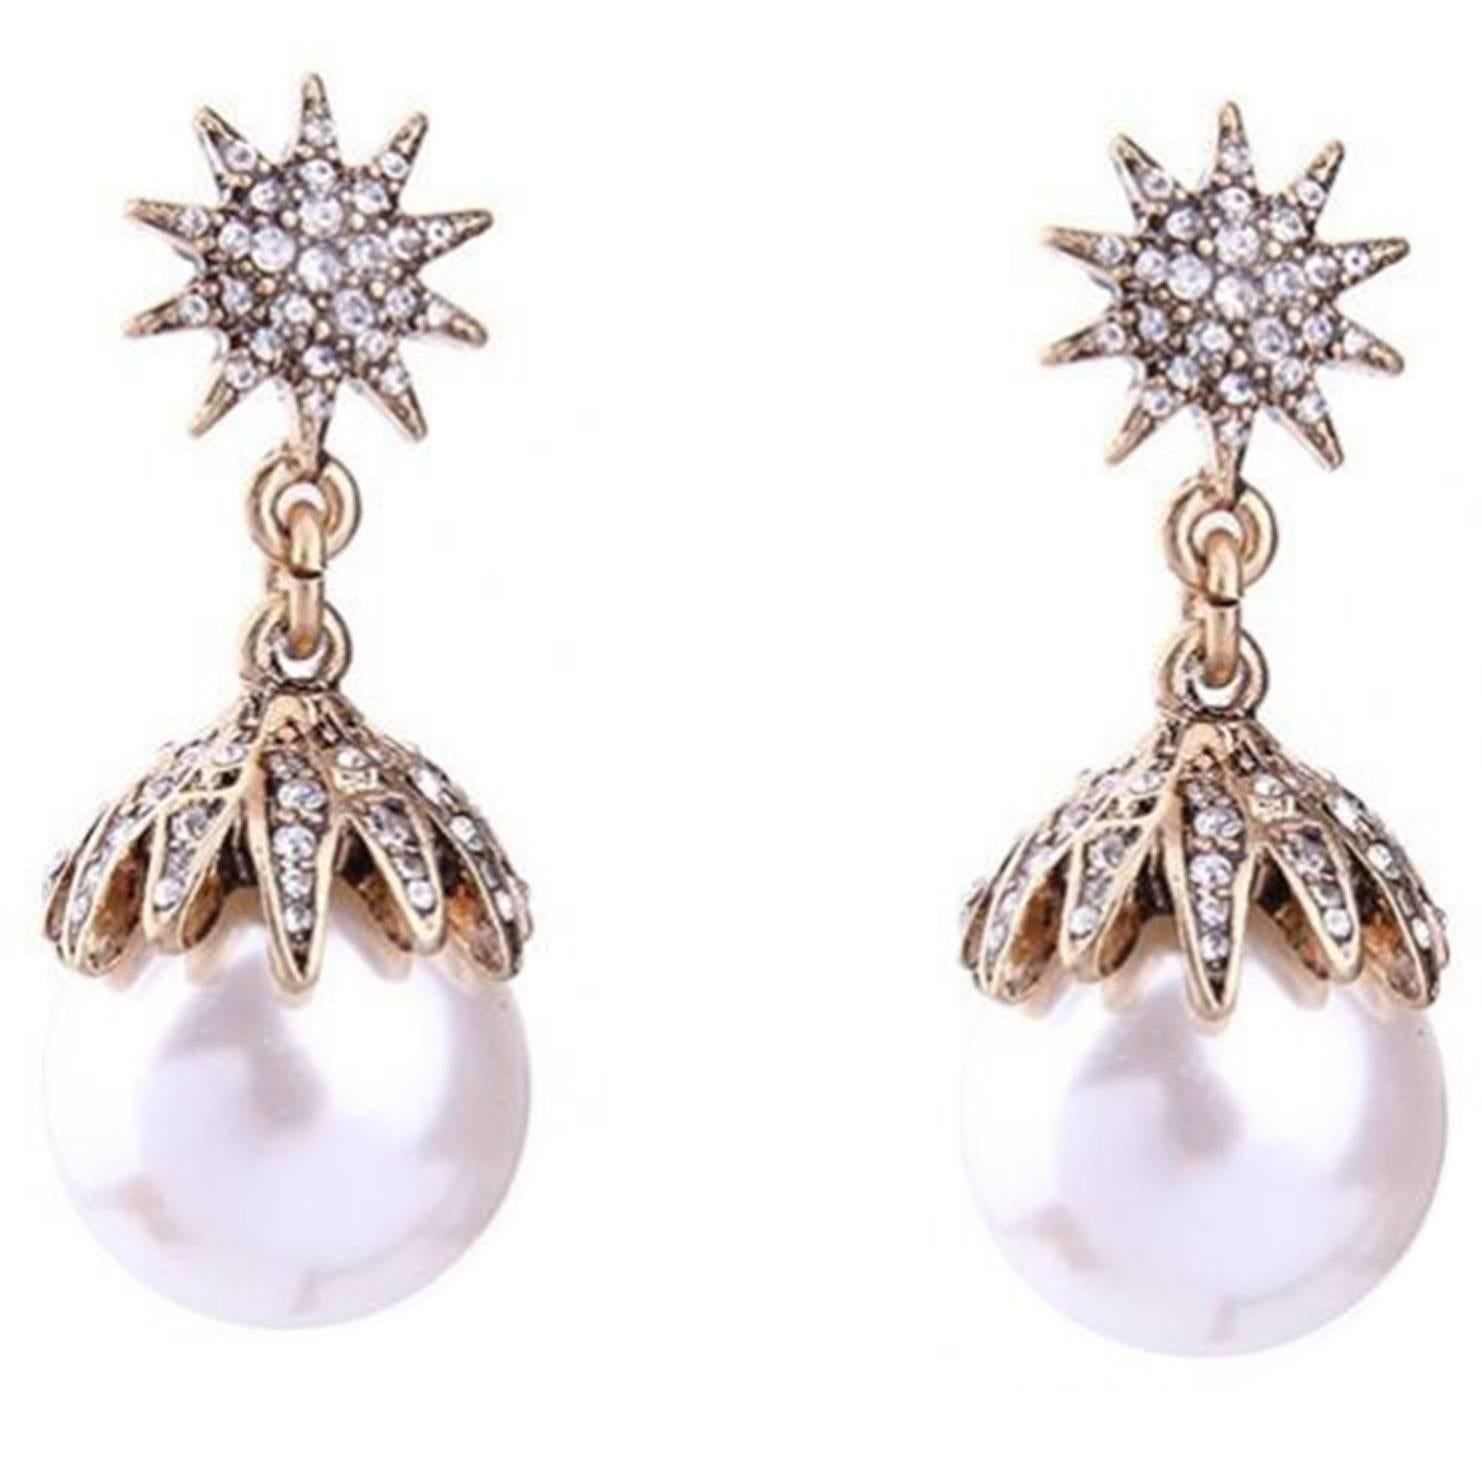 Chic Oscar De La Renta Faux Pearl and Faux Diamond Statement Earrings